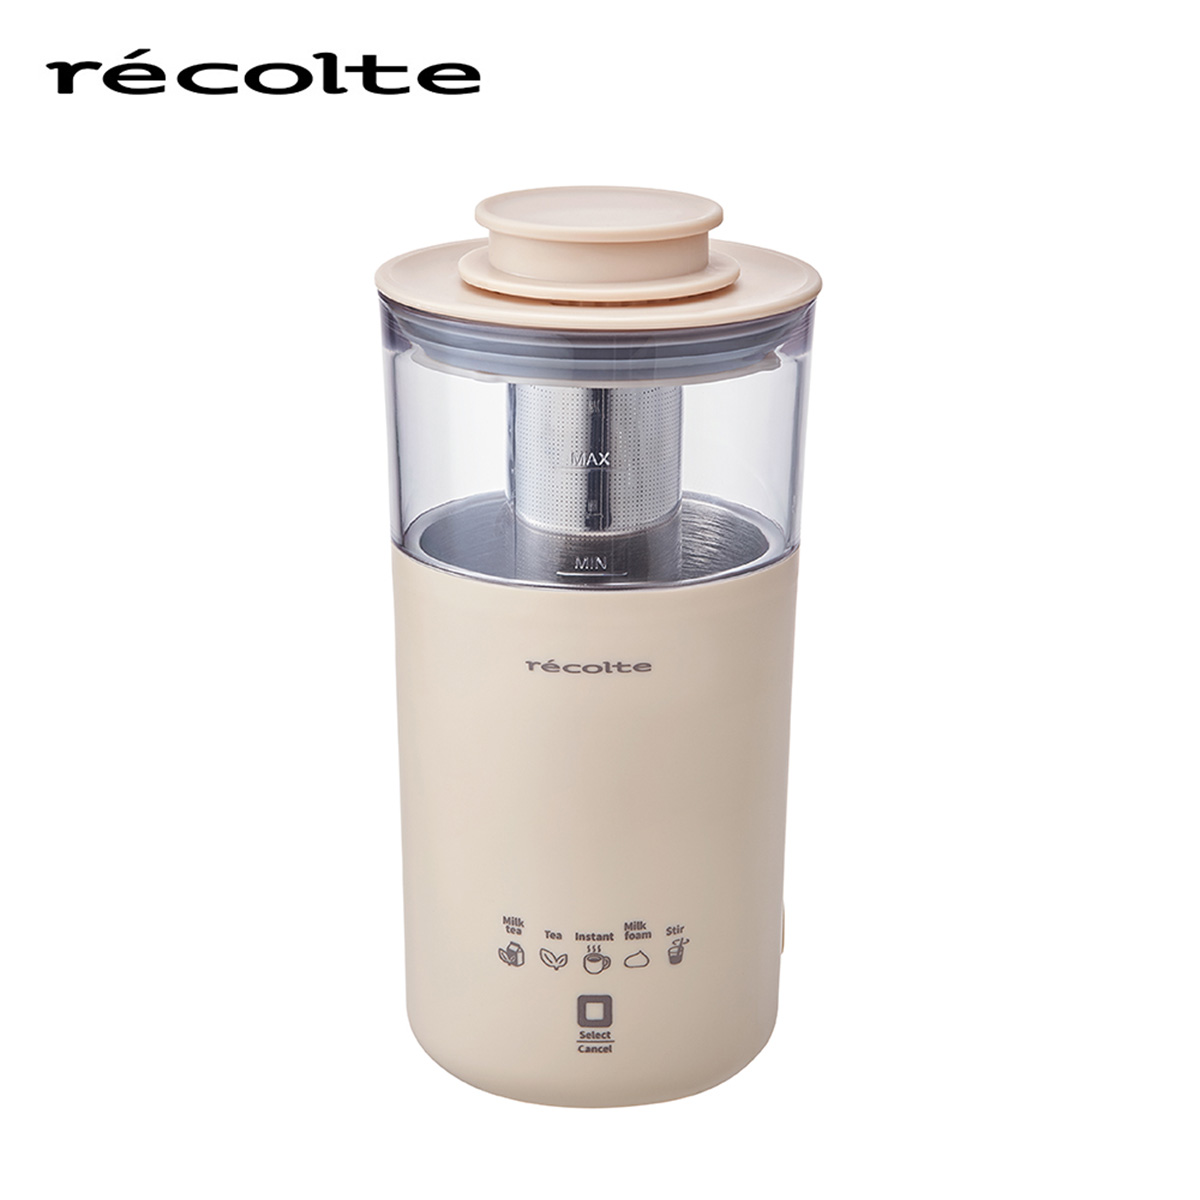 recolte(レコルト) ミルクティーメーカー クリームホワイト RMT-1(W)